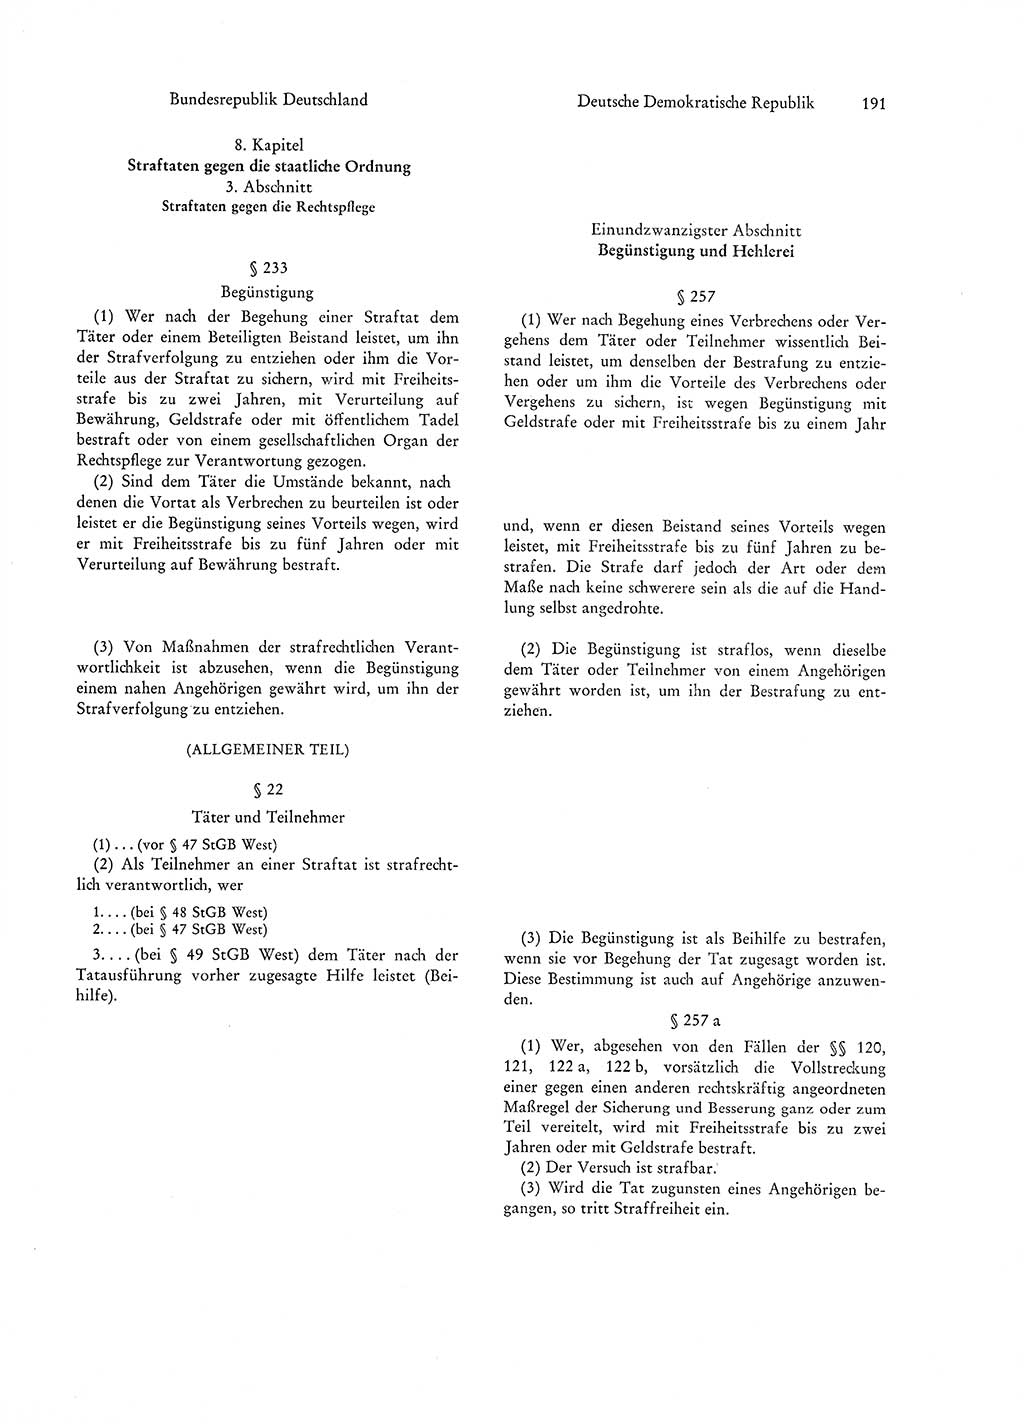 Strafgesetzgebung in Deutschland [Bundesrepublik Deutschland (BRD) und Deutsche Demokratische Republik (DDR)] 1972, Seite 191 (Str.-Ges. Dtl. StGB BRD DDR 1972, S. 191)